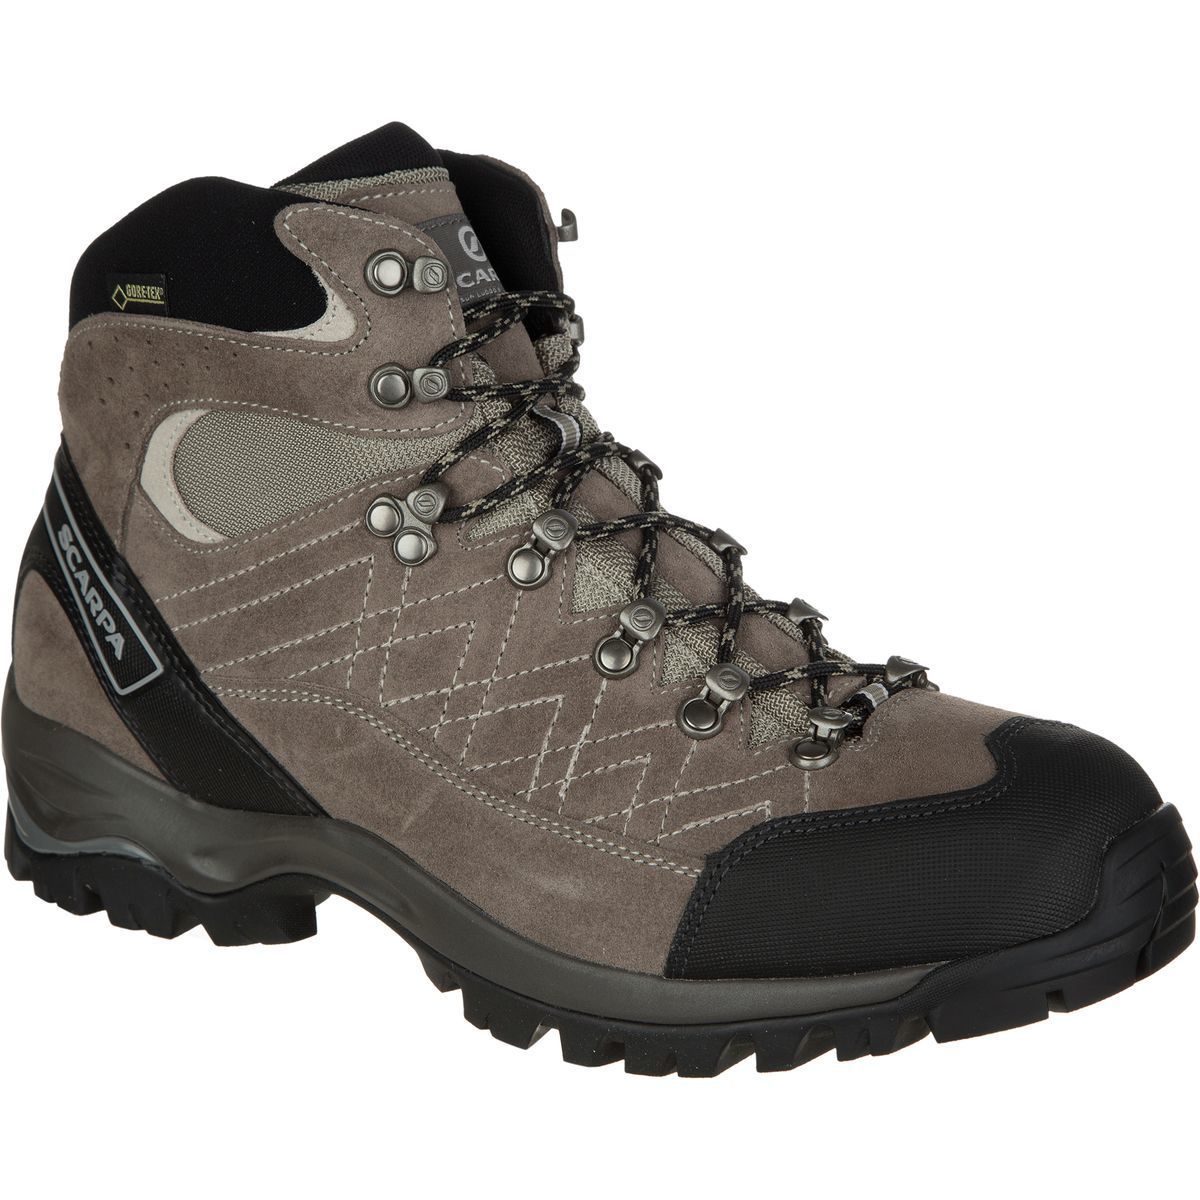 Scarpa Kailash GTX Hiking Boot - Men's - Footwear